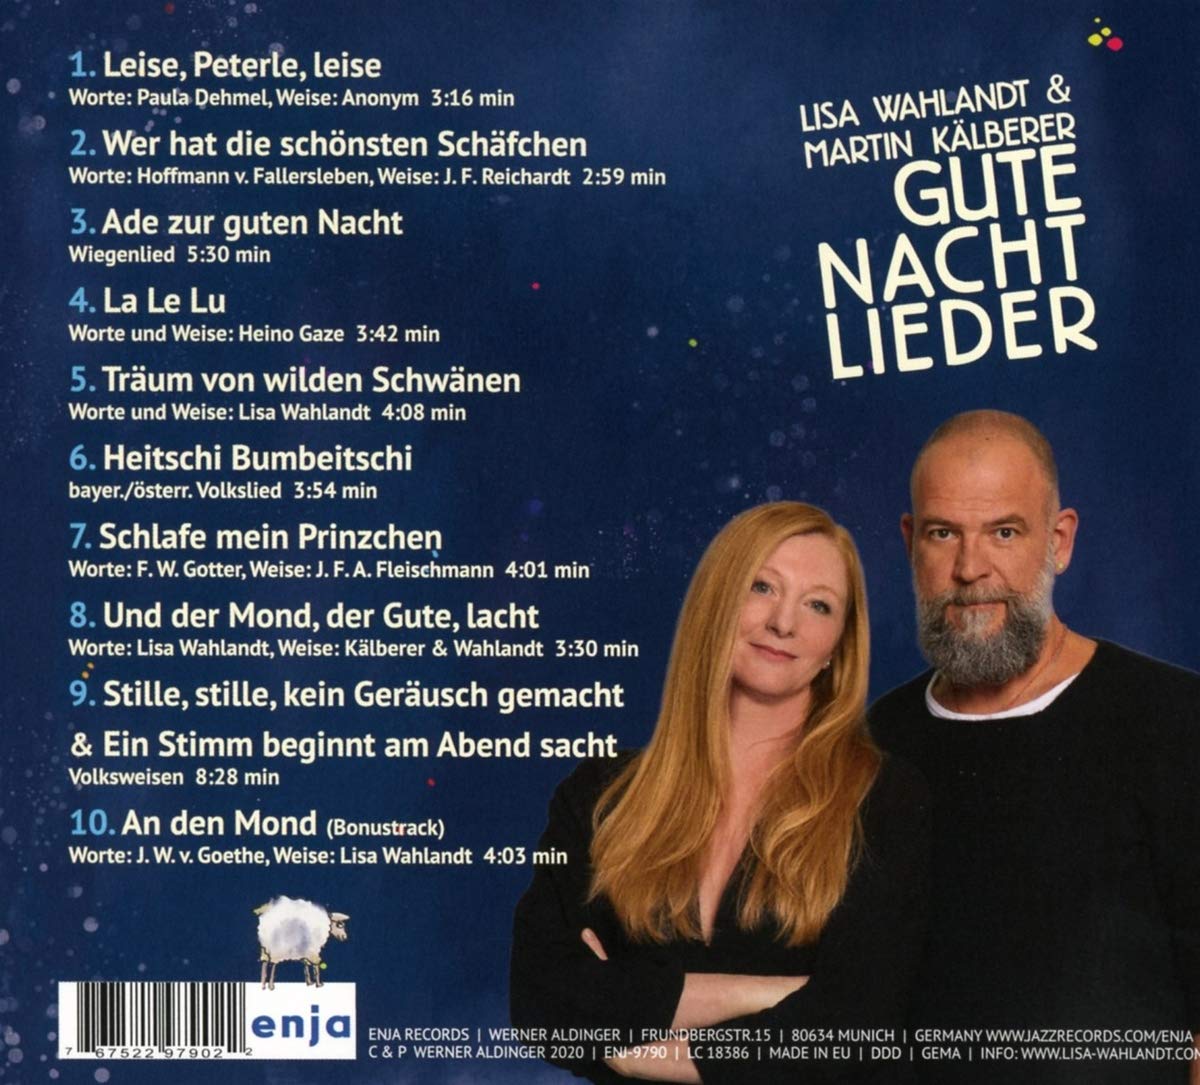 Lisa Wahlandt / Martin Kalberer (리사 발란트 / 마틴 칼베러) - Gute Nacht Lieder Nummer 2 